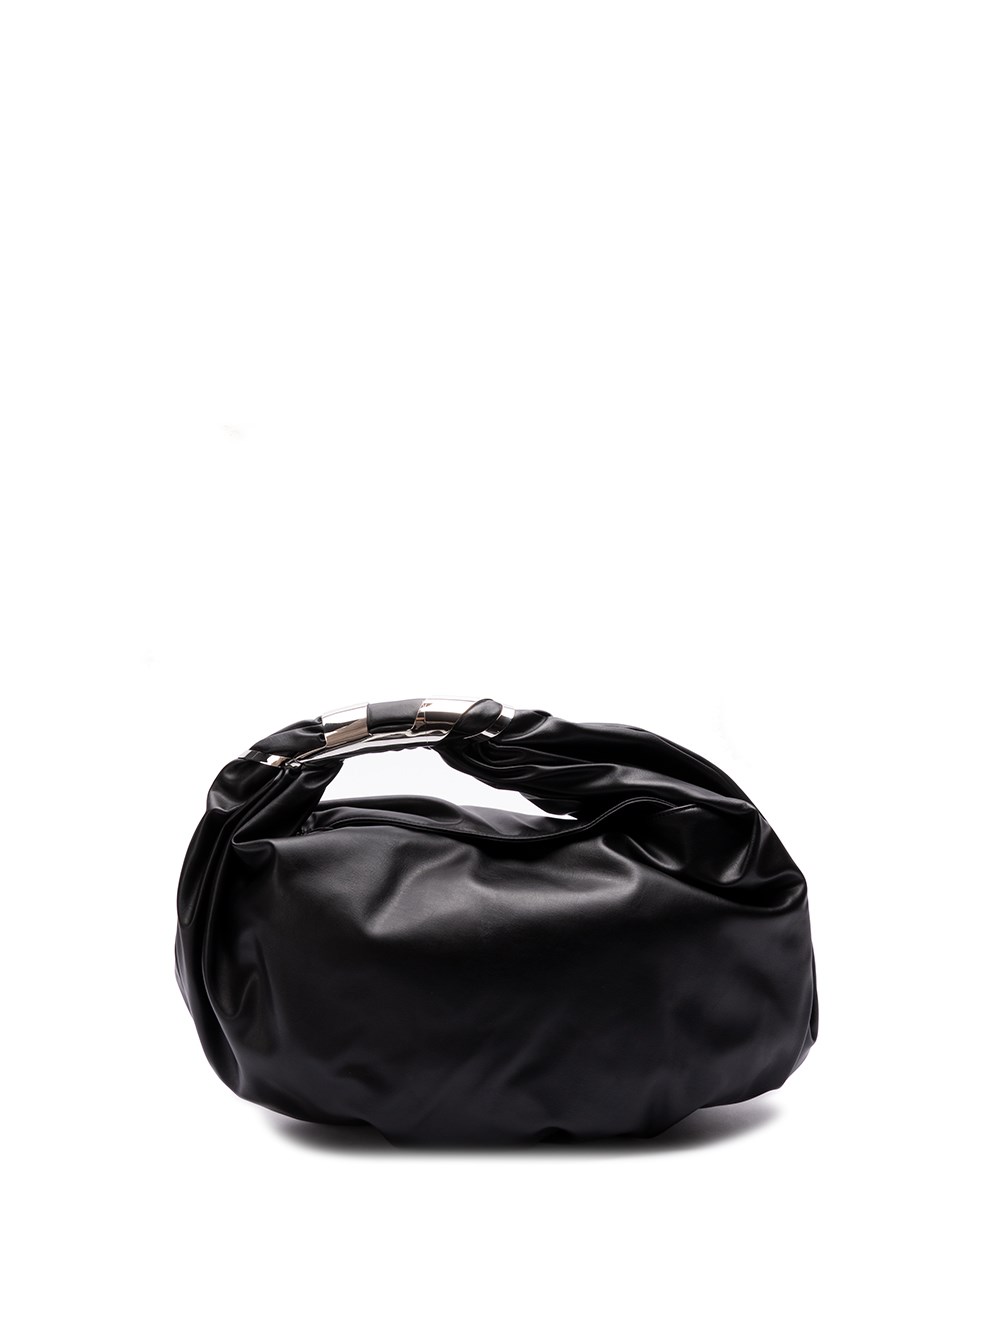 Shoulder Bag 5140125-95 - OEM Black and Decker 